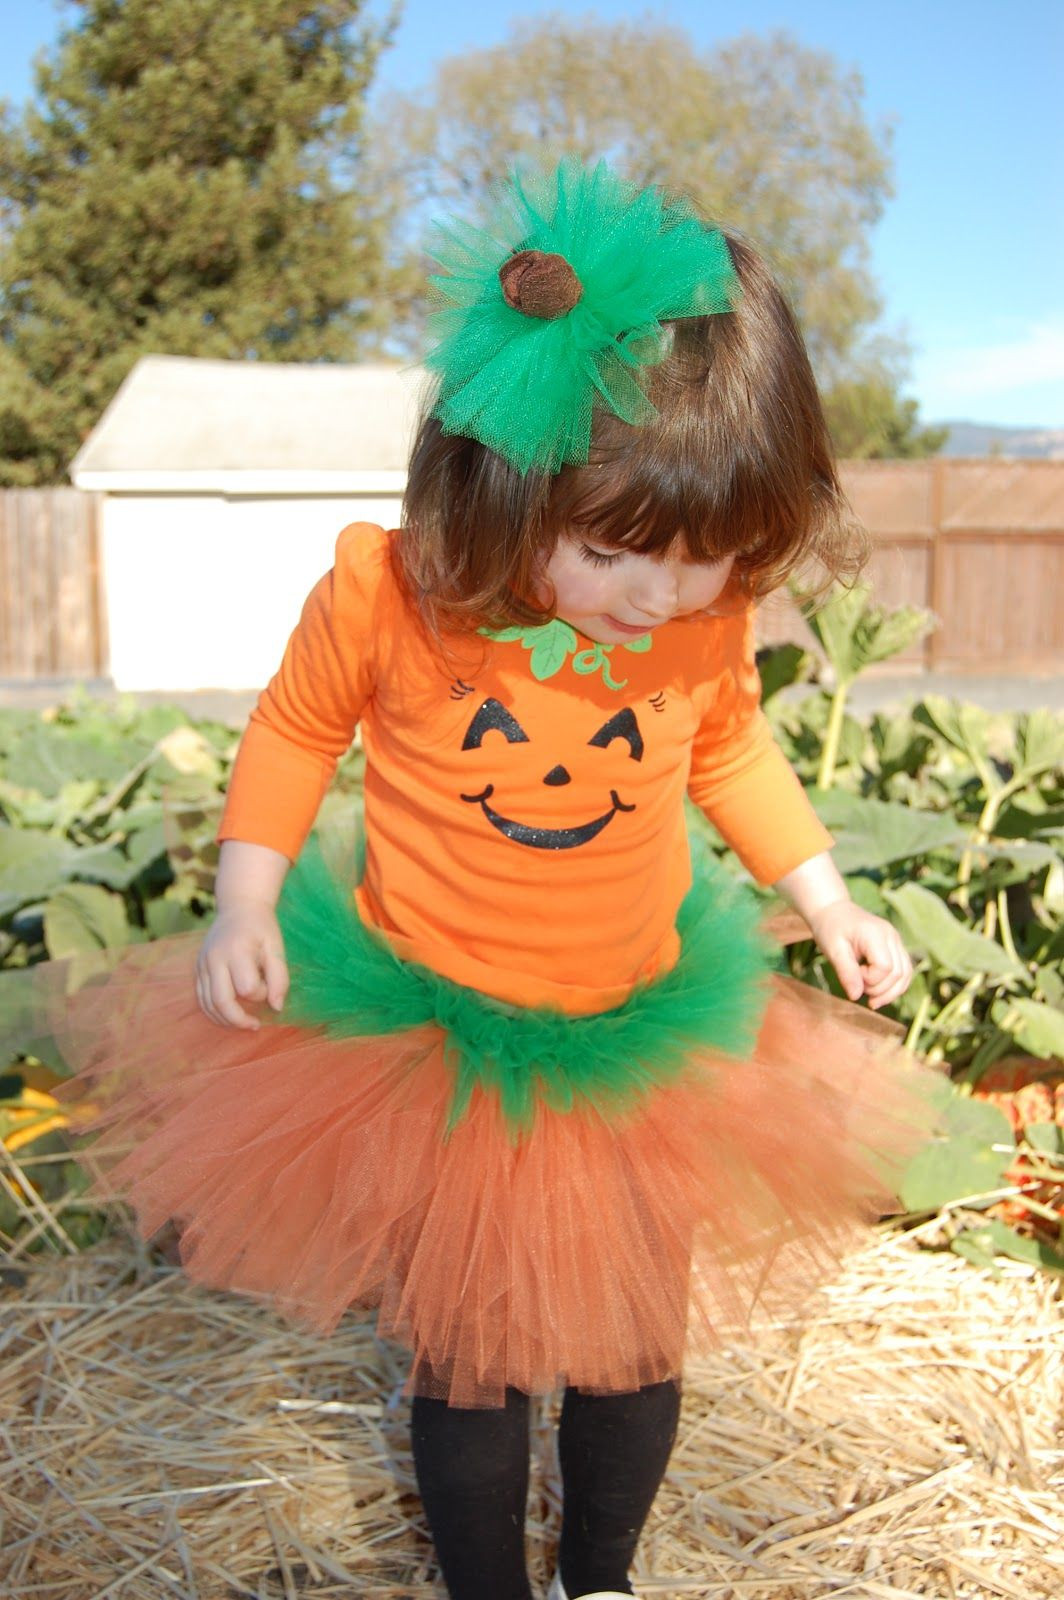 DIY Pumpkin Costume Toddler
 Best 25 Toddler pumpkin costume ideas on Pinterest